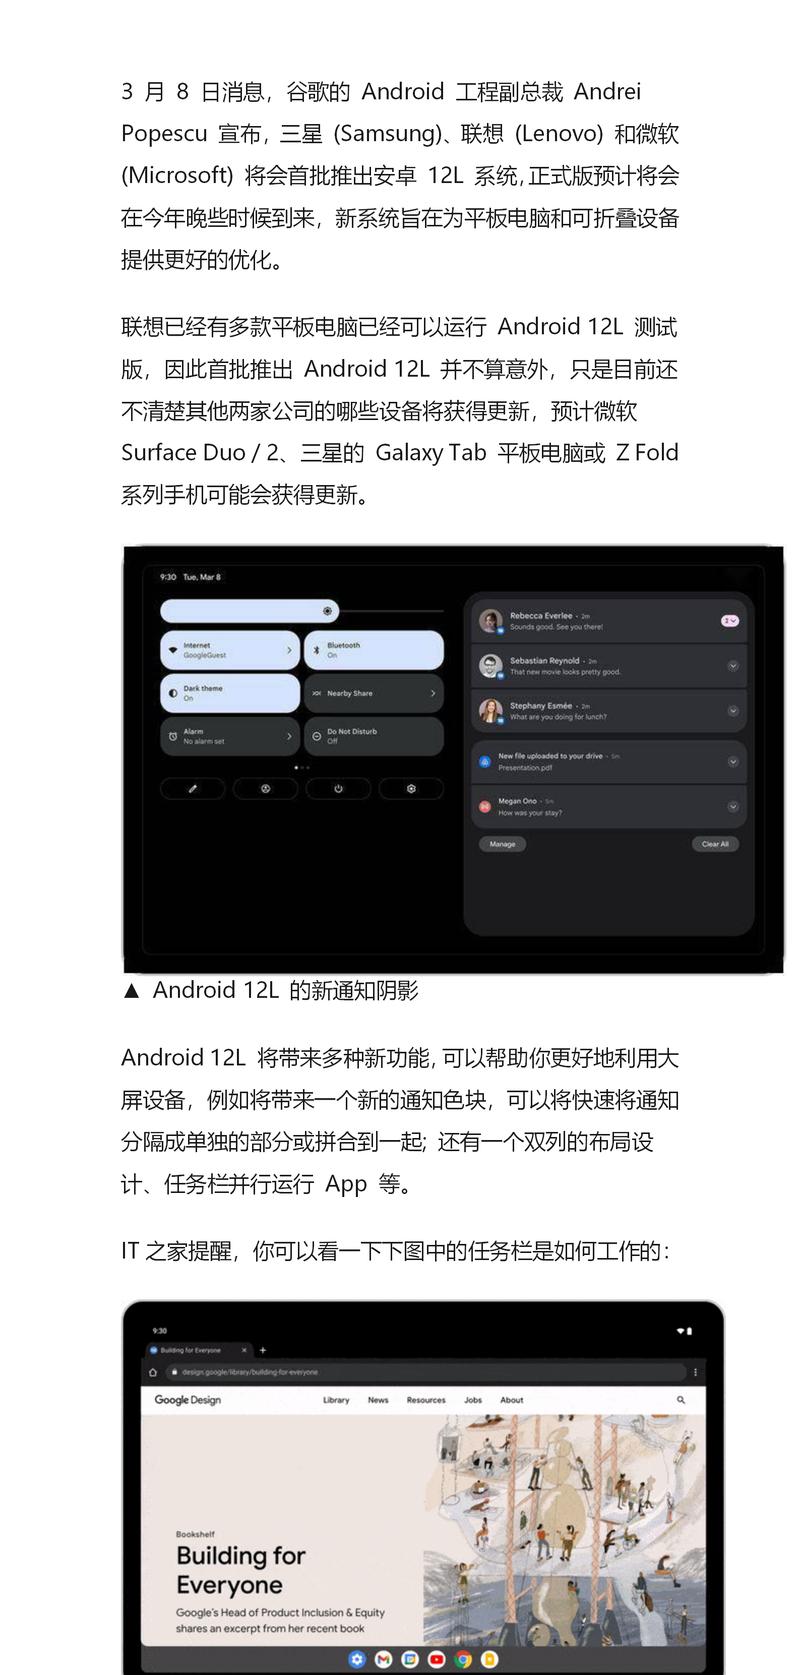 Android12L系统（提供无限可能的用户体验）